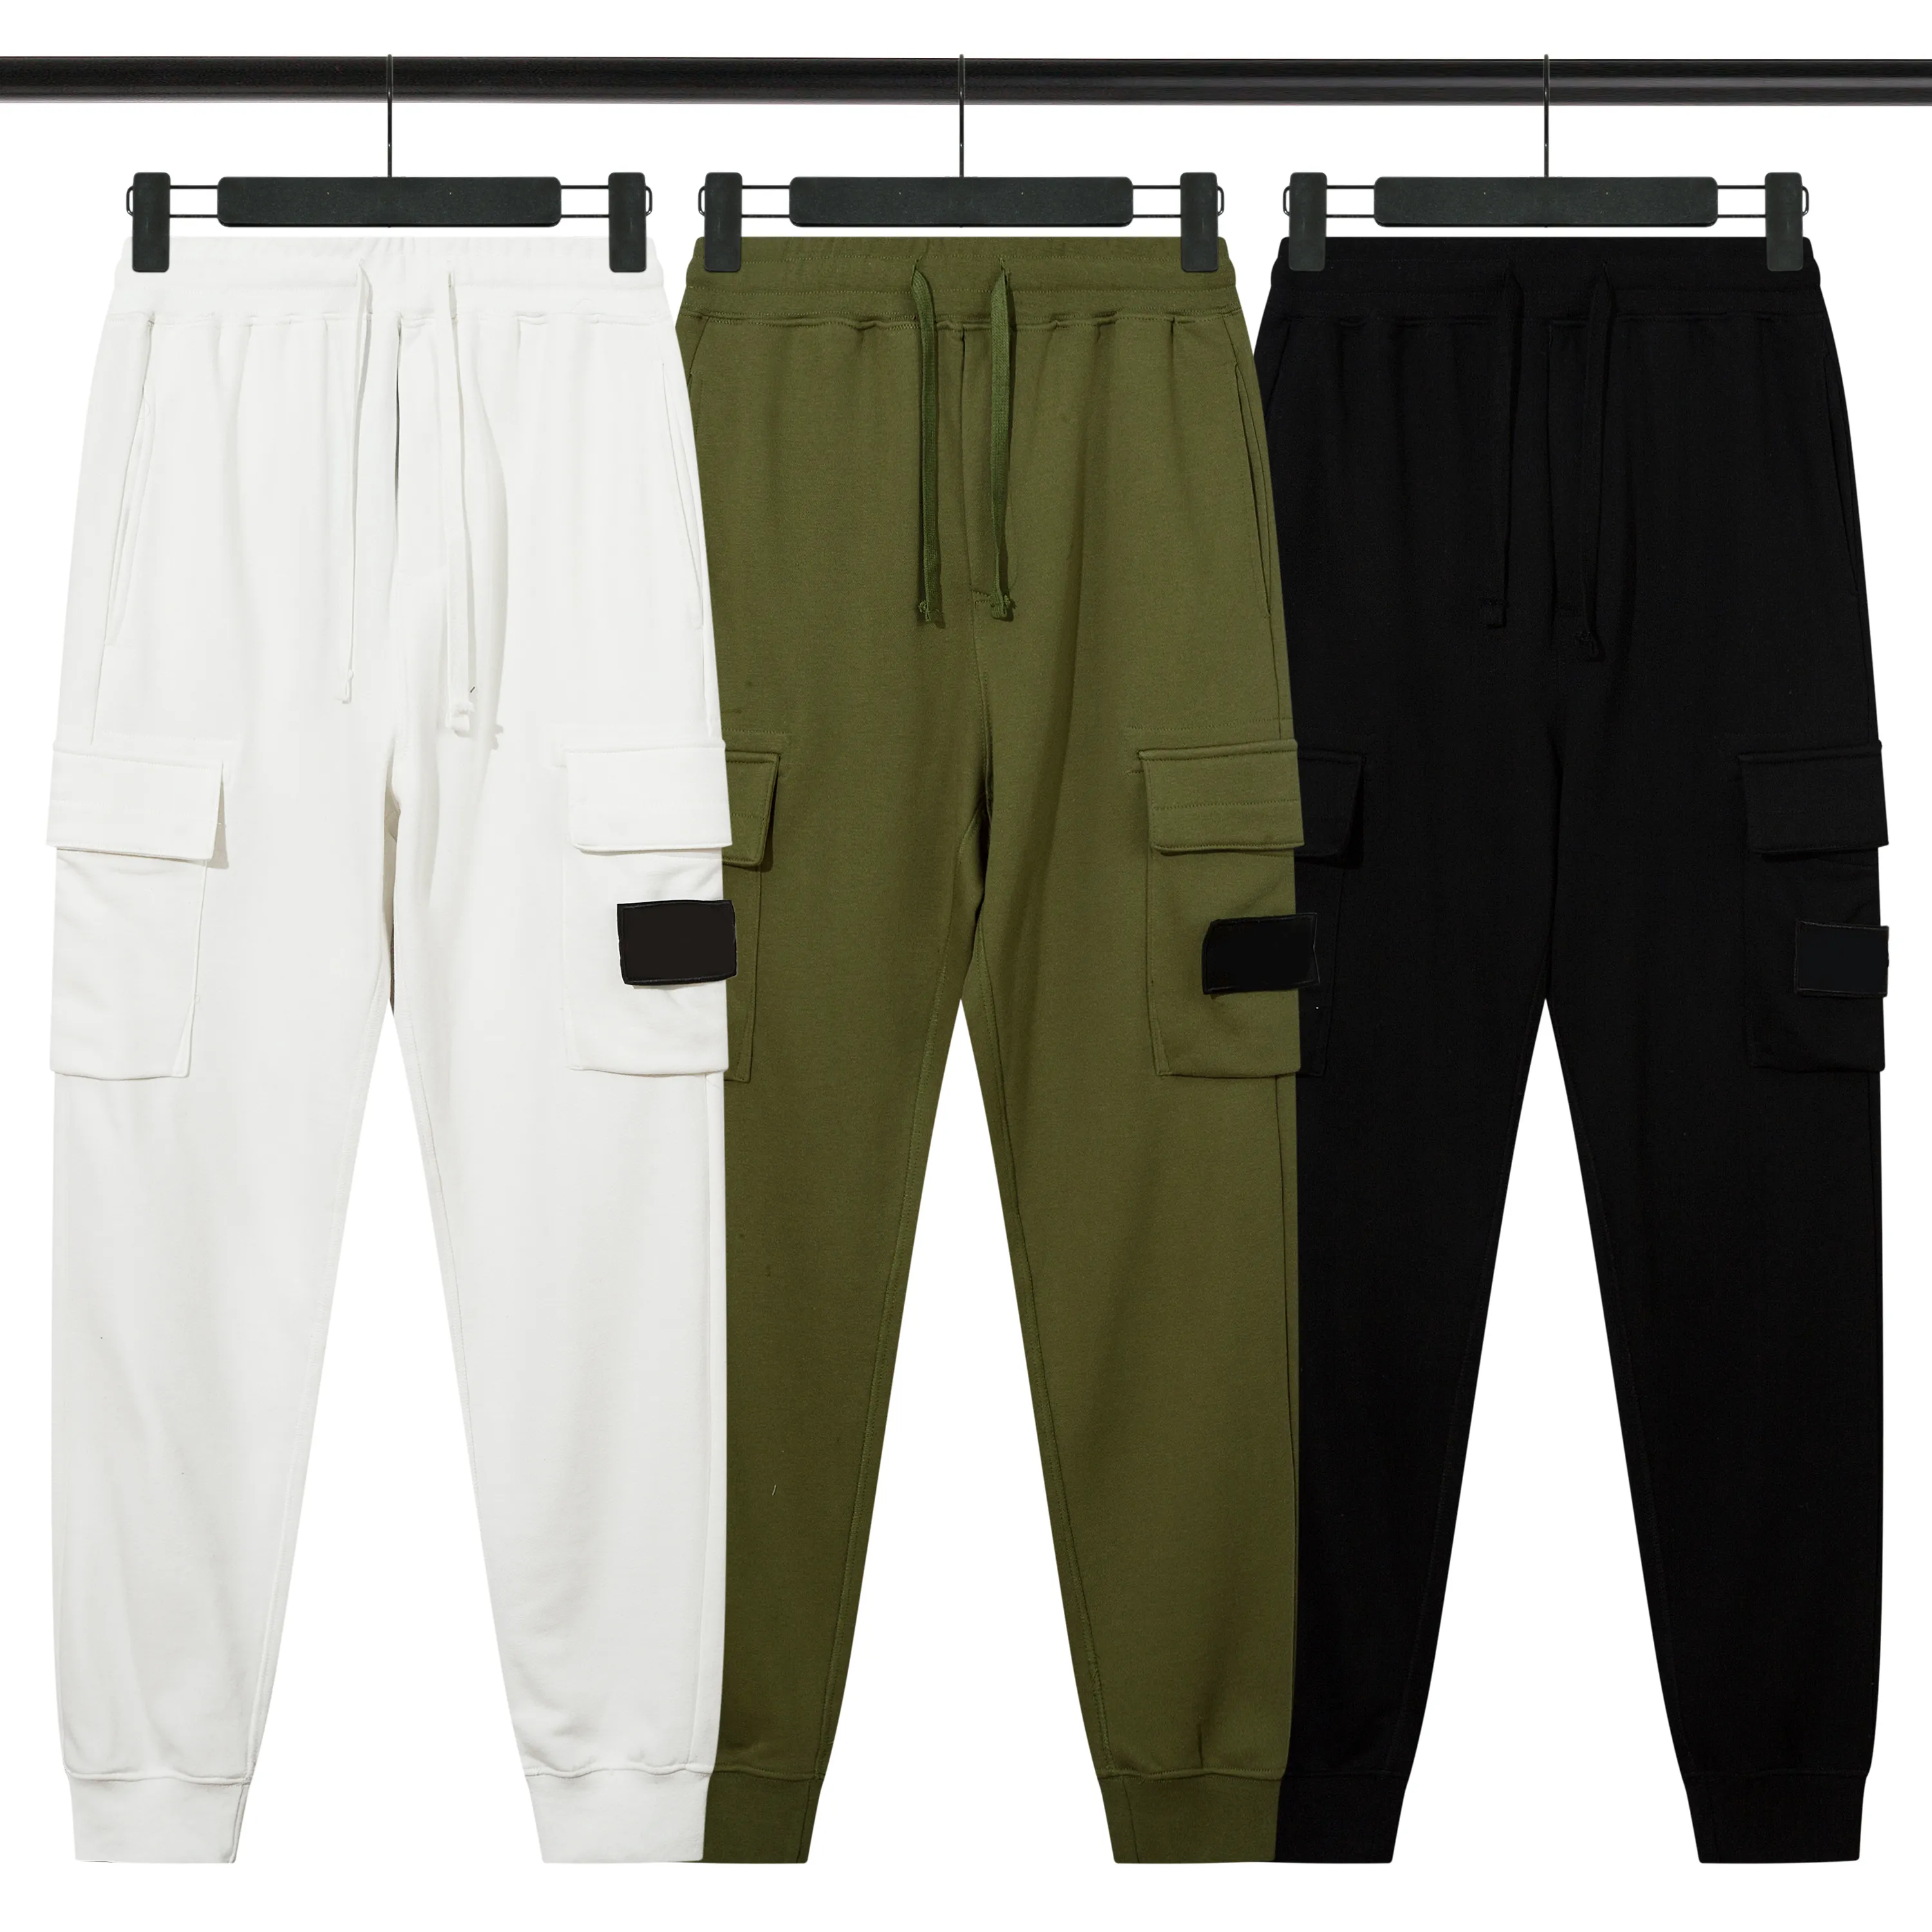 Pantalones deportivos de algodón con bordado de brújula de alta calidad de diseñador, pantalón sudadera deportiva informal con múltiples bolsillos para exteriores